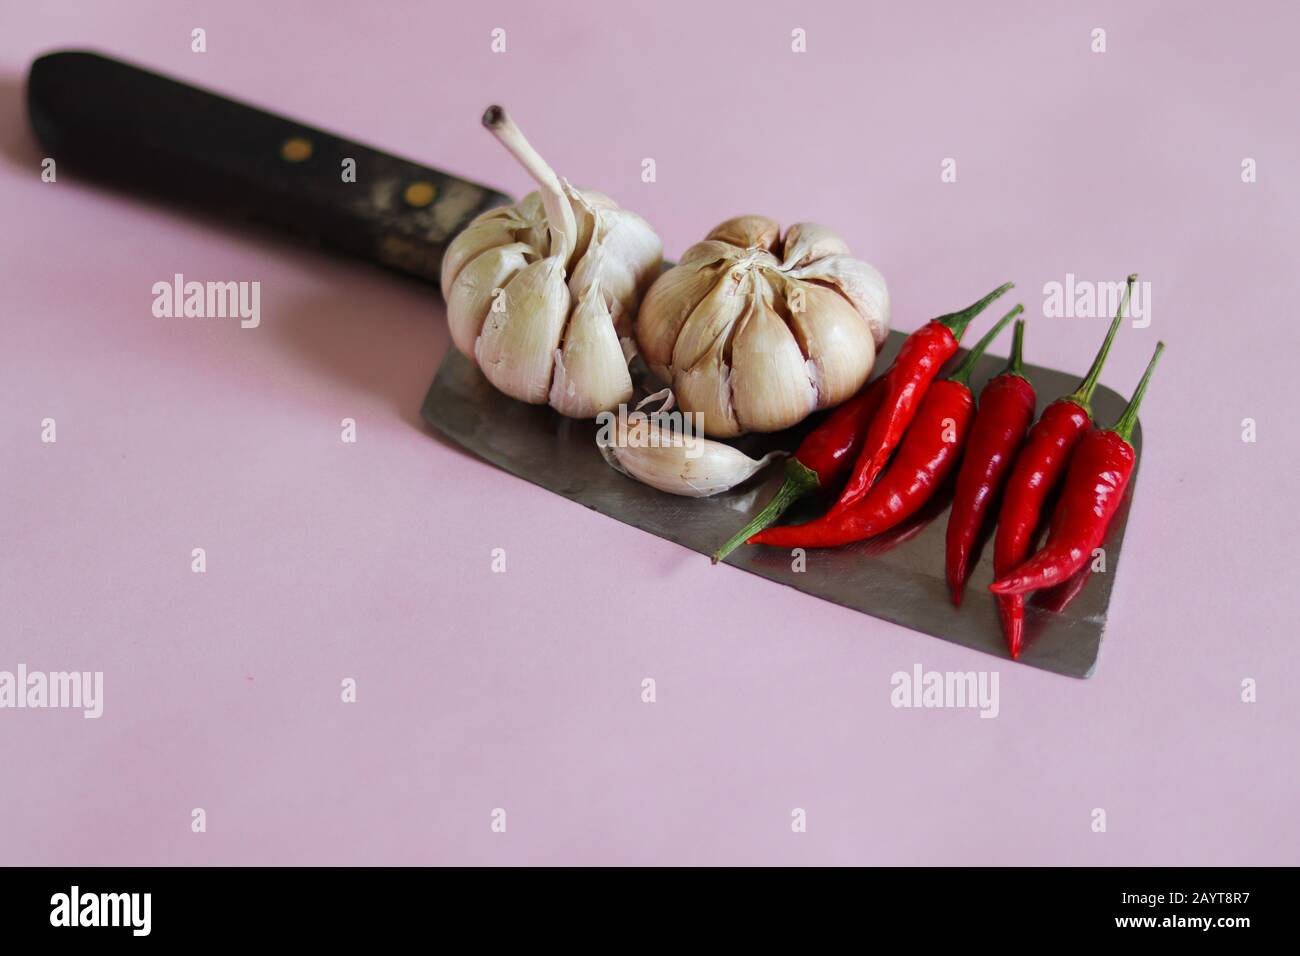 Des bulbes d'ail et des piments rouges sur un couteau sur fond rose pour montrer le concept de gastronomie, de cuisine, de cuisine et d'industrie alimentaire Banque D'Images